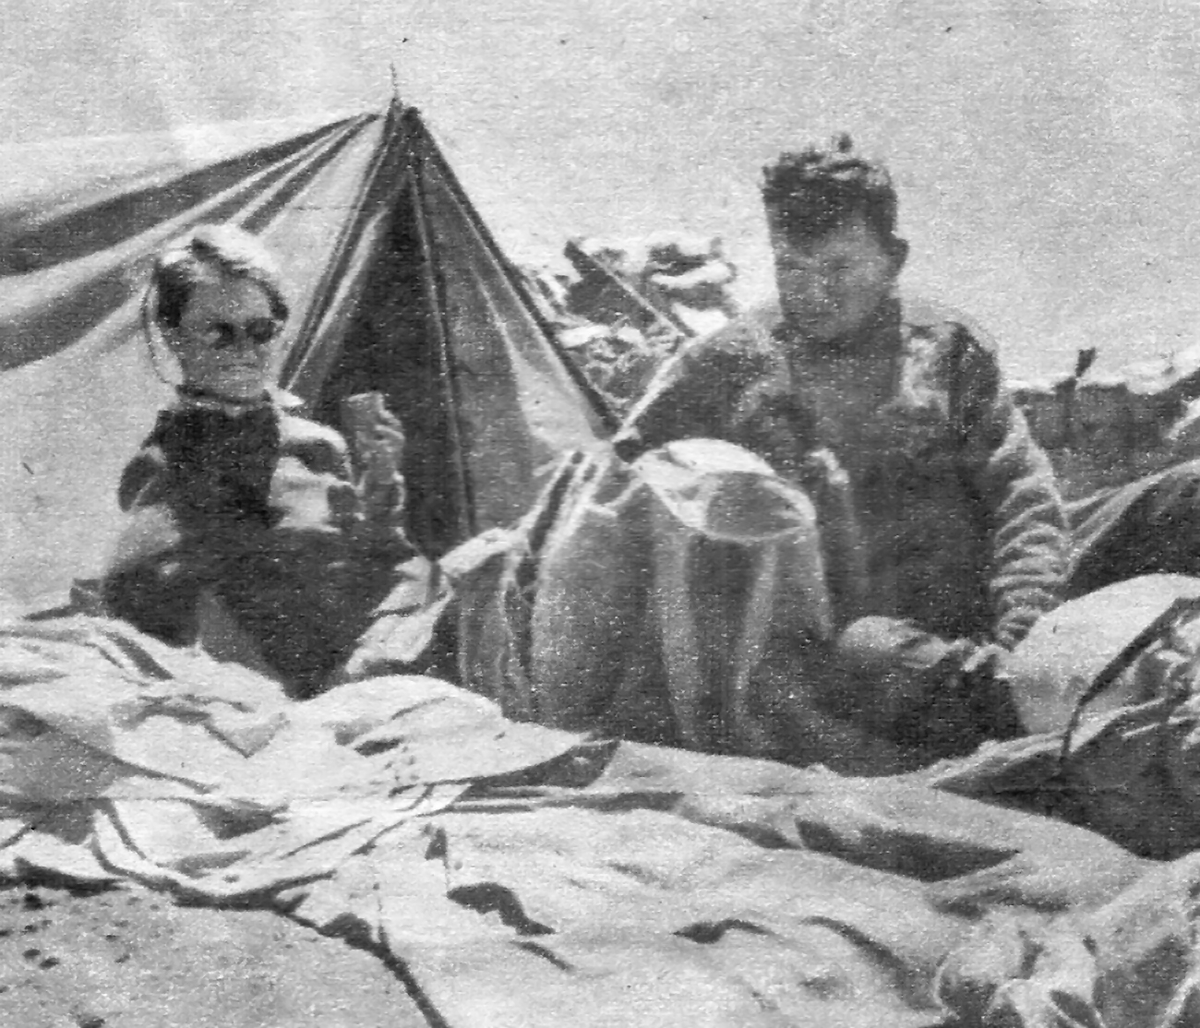 Juan Jorge Link y su esposa Adrienne Bance murieron mientras descendían del Aconcagua en la que fue la quinta vez de Link trepando la montaña. Bance fue también la primera mujer en alcanzar la cima de esta montaña.